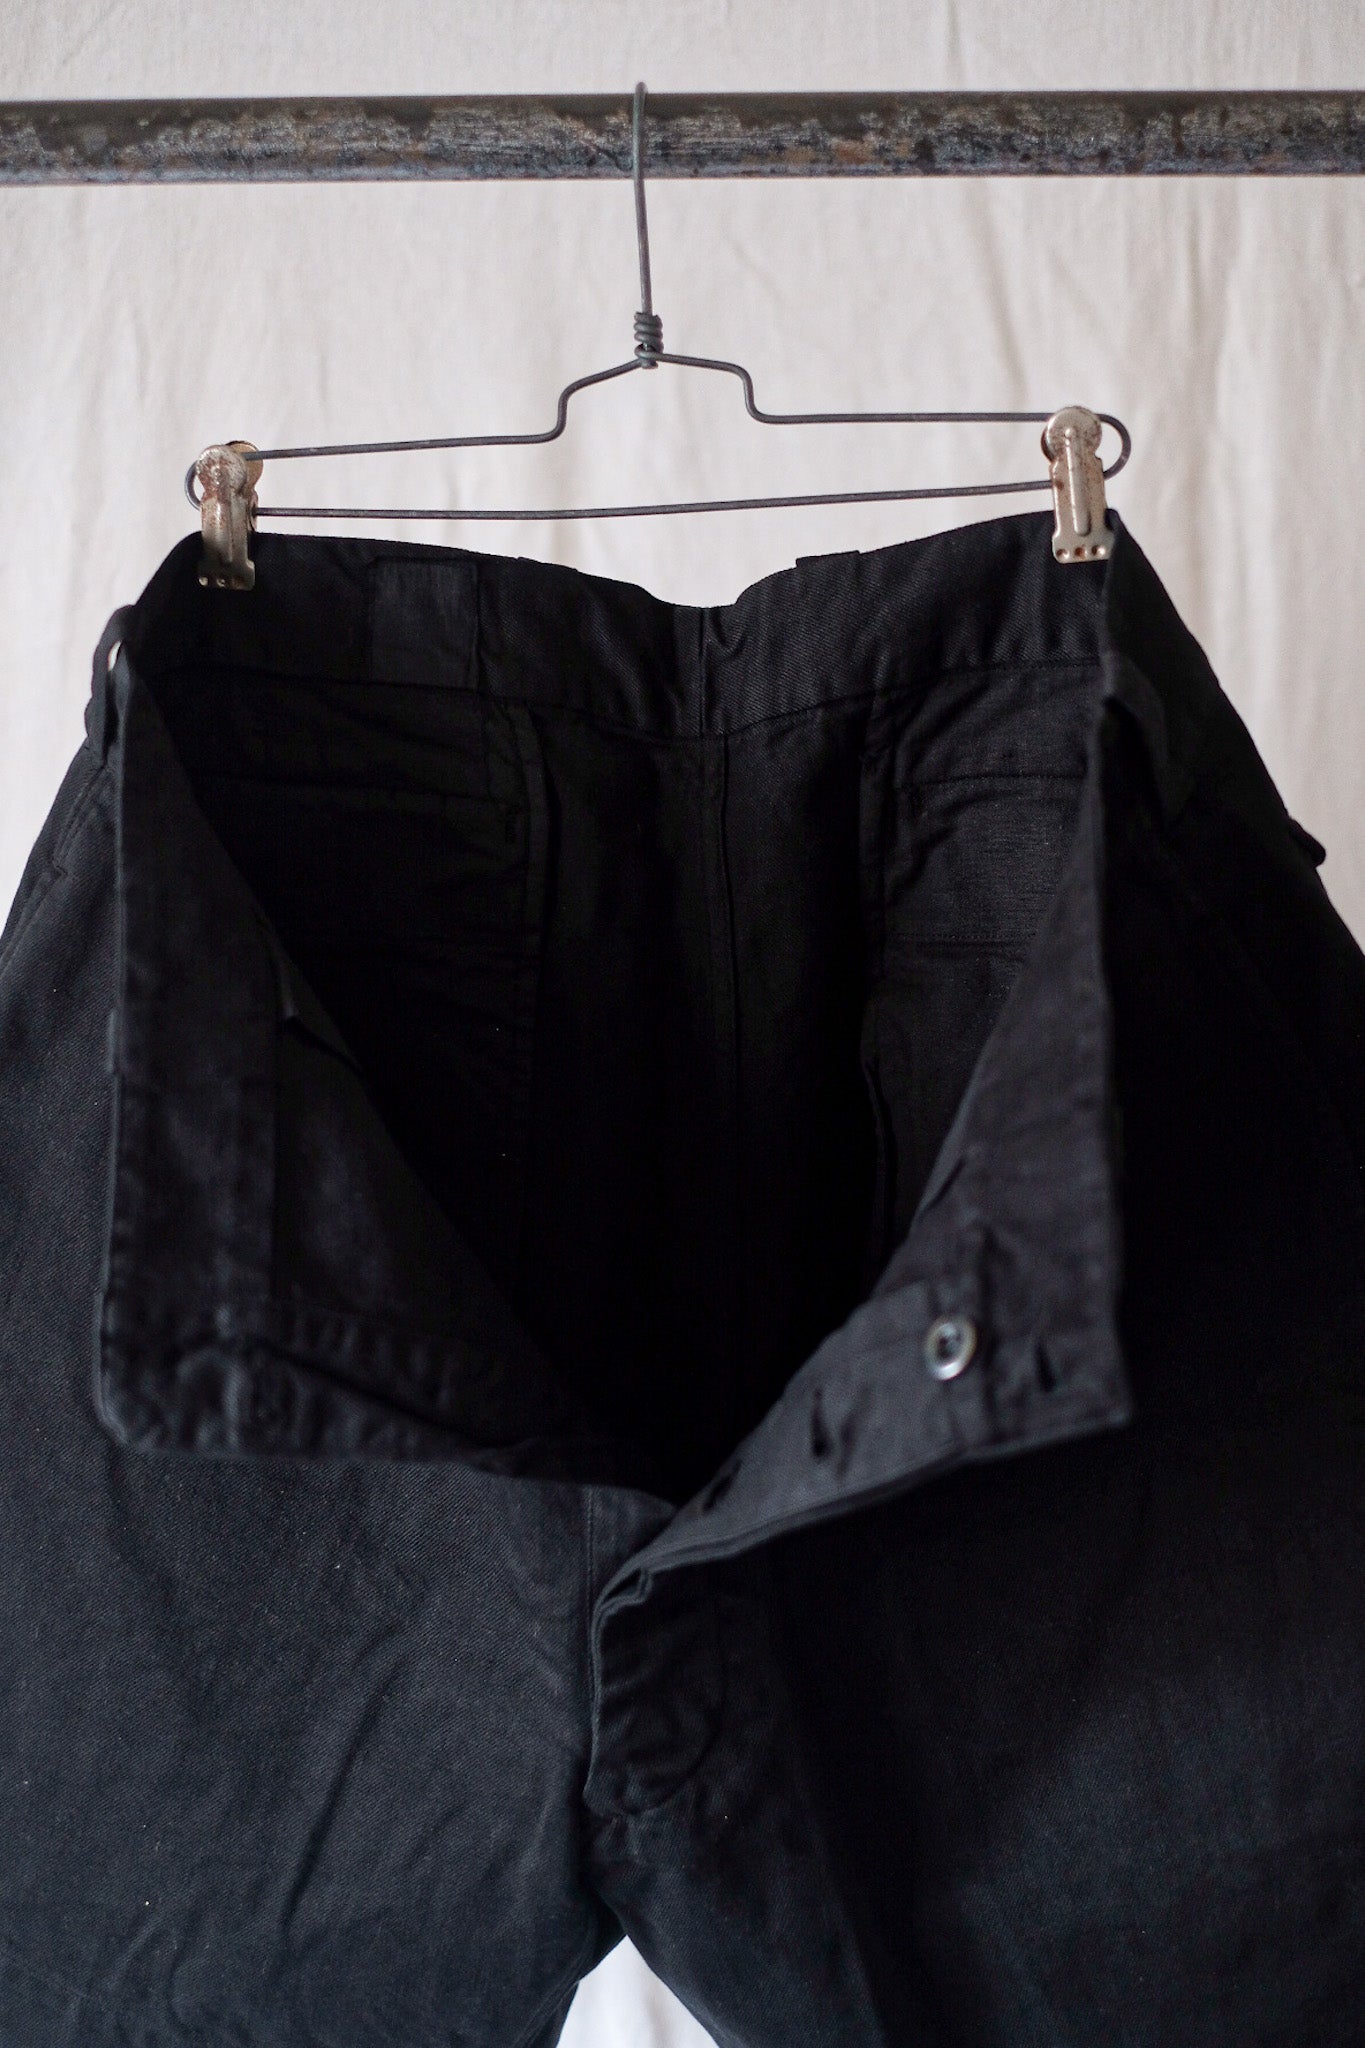 [〜60年代]法國陸軍M52 Chino短褲尺寸。5“黑色Overdye”